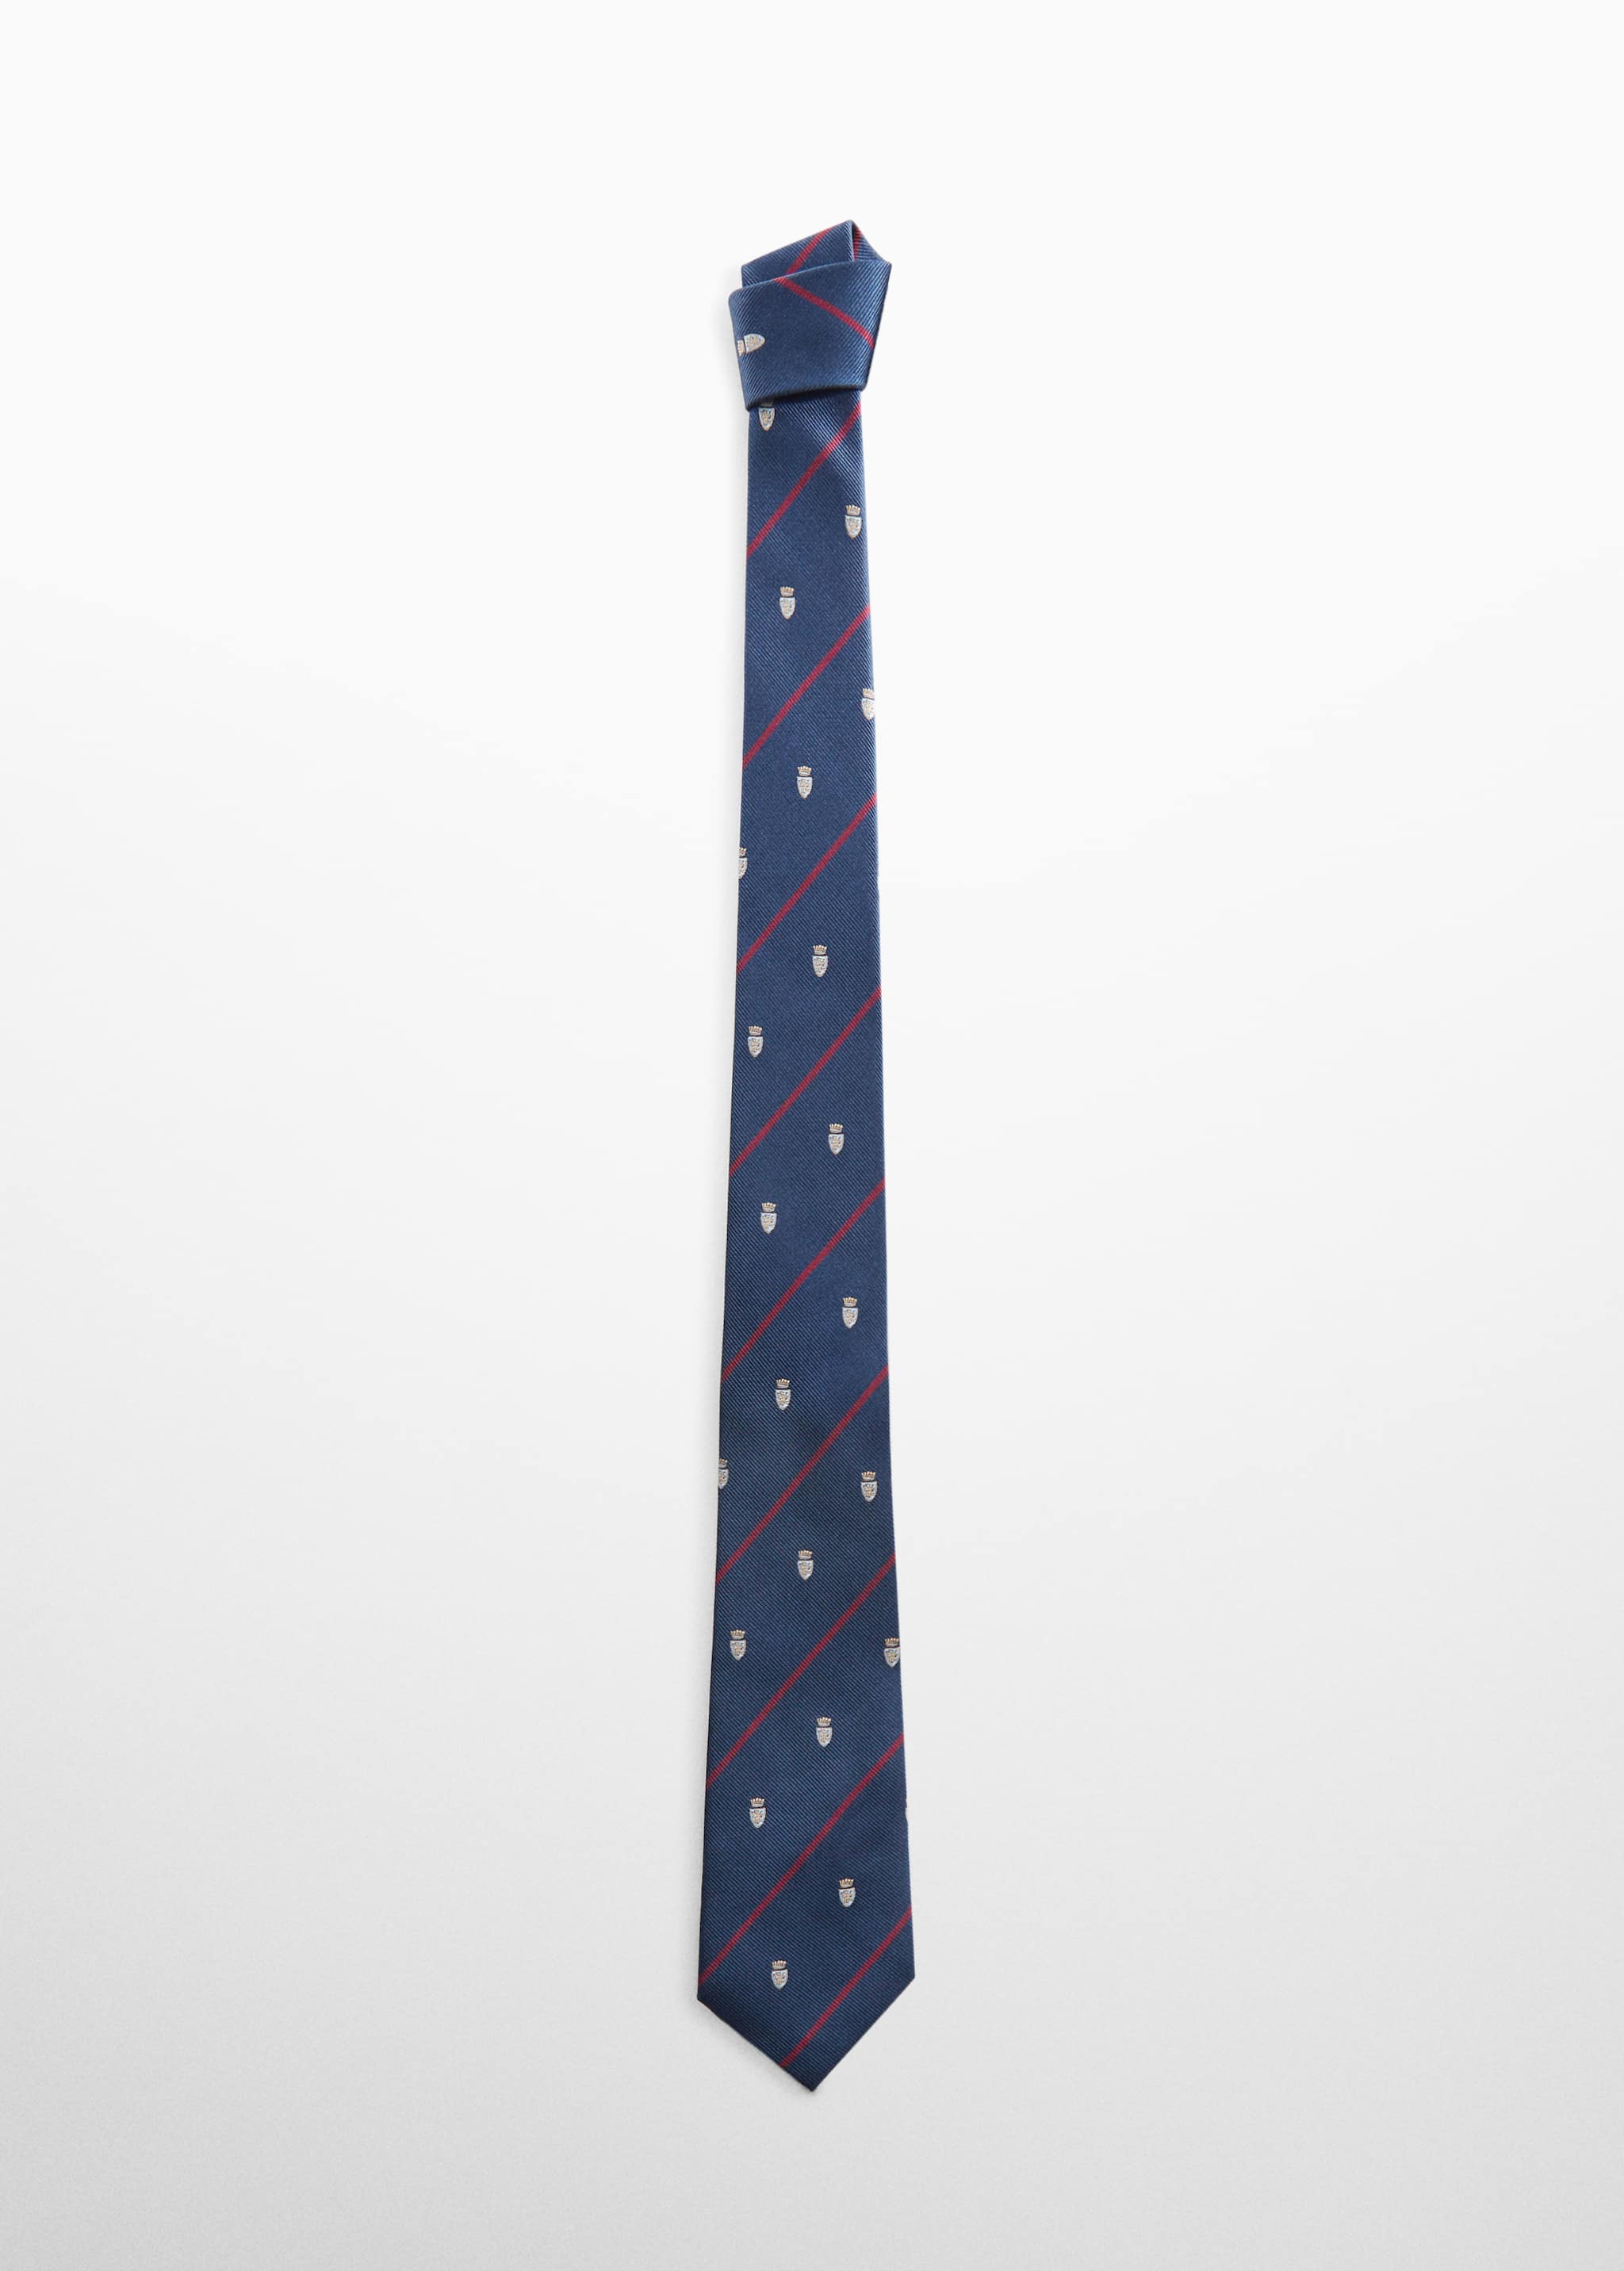 Corbata estampada - Artículo sin modelo